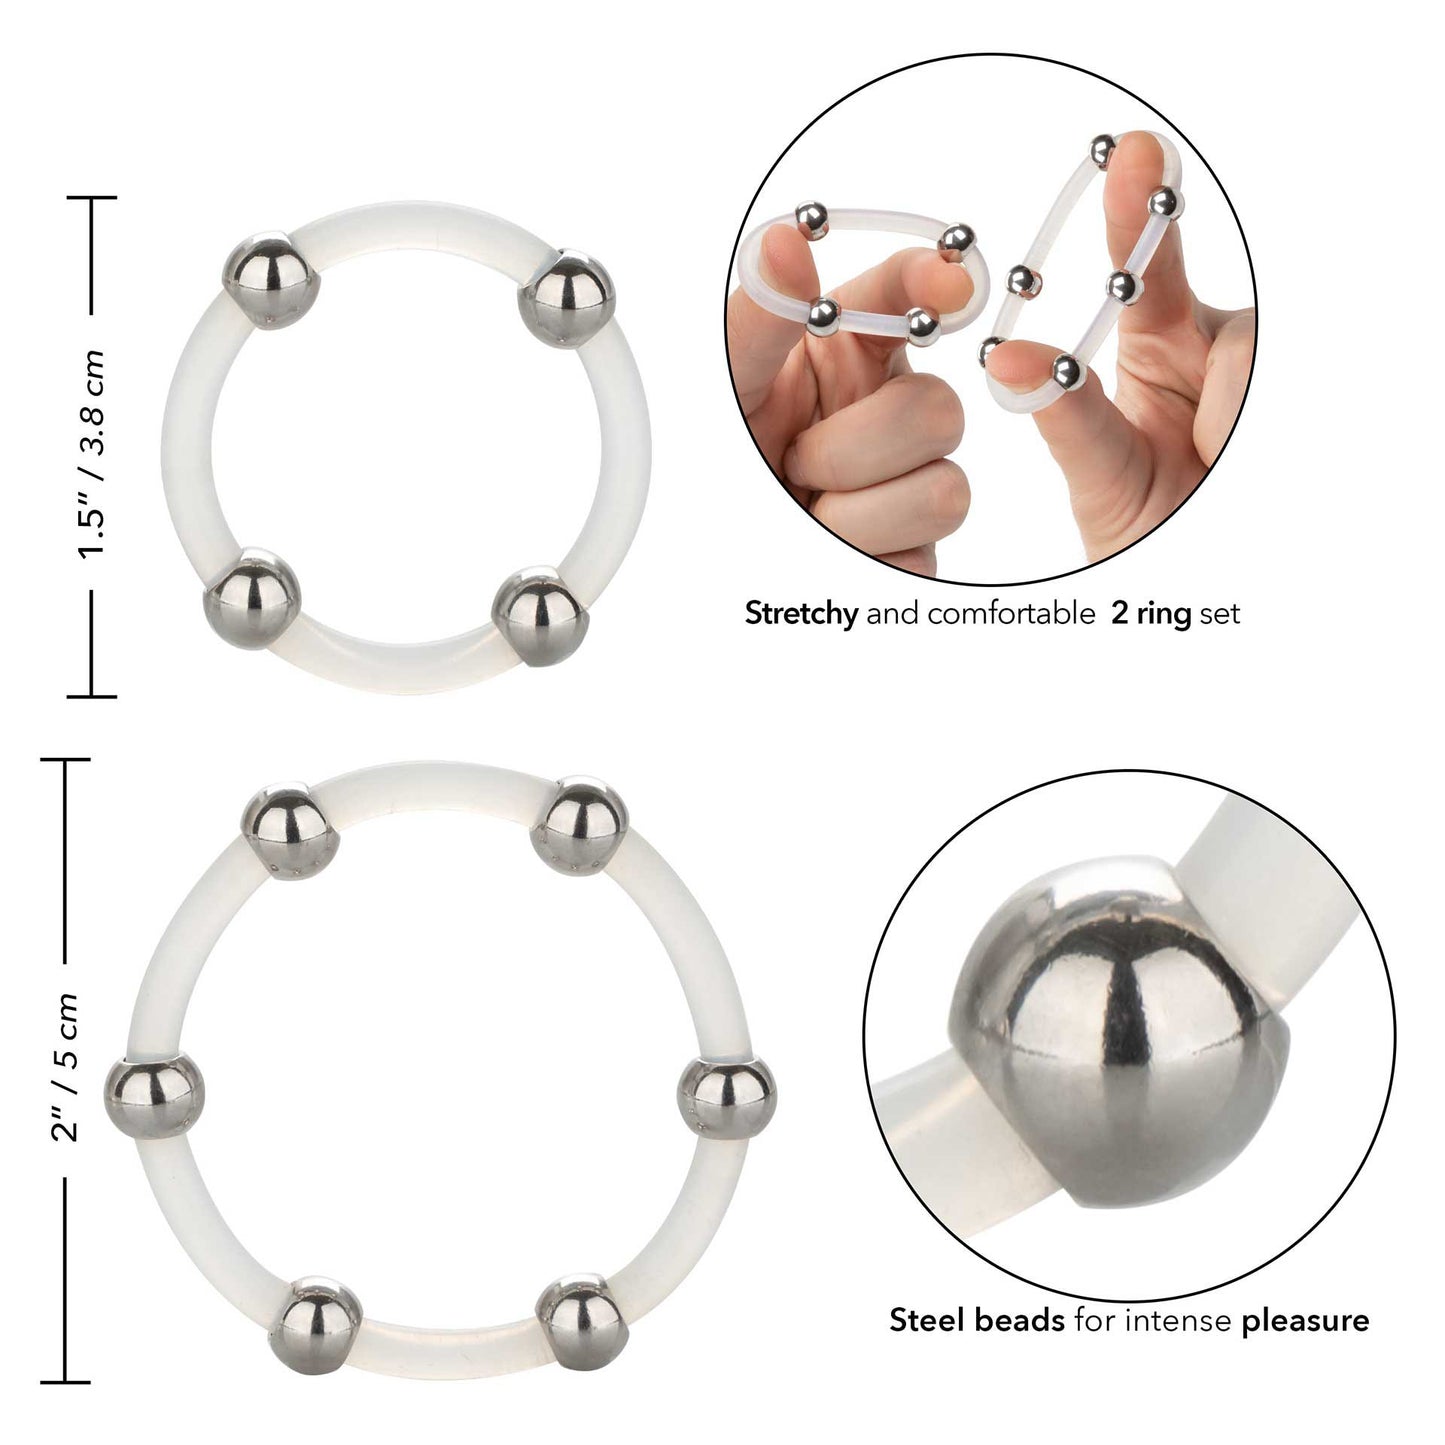 Steel Beaded Silicone Ring Set - UABDSM